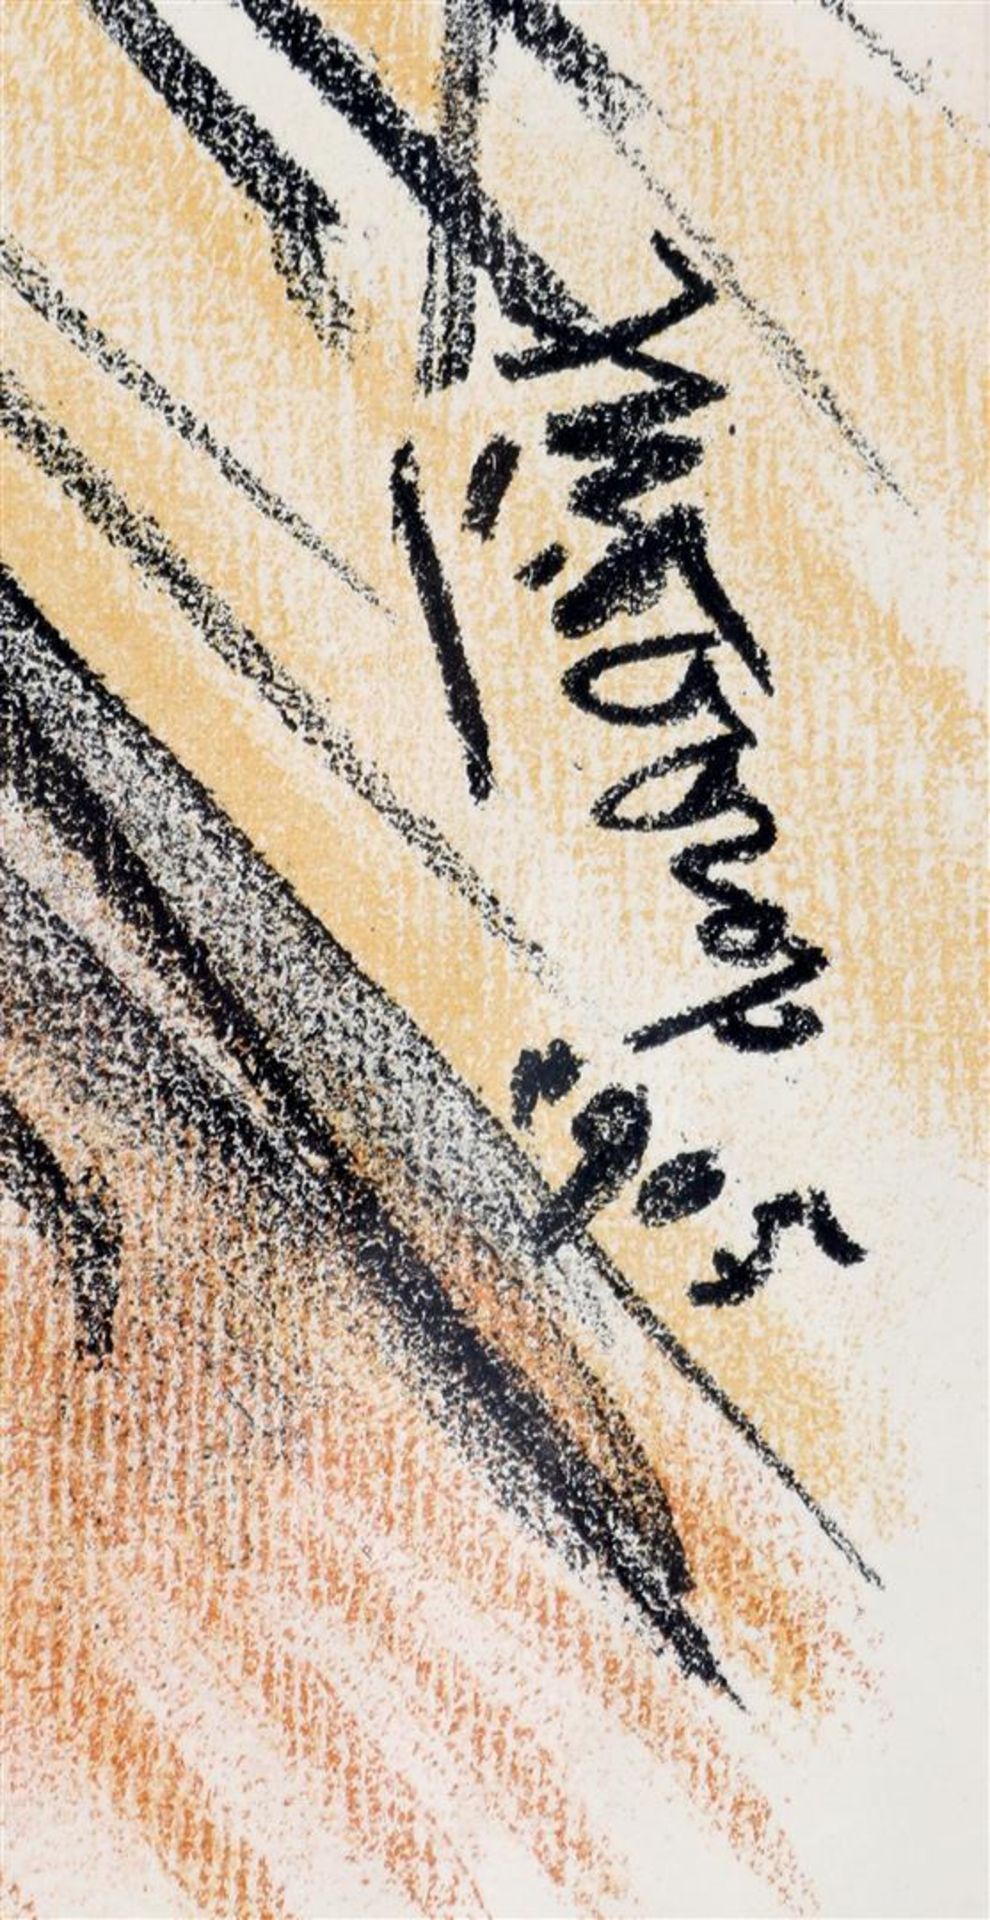 Jan Toorop (1858-1928) - Image 6 of 6